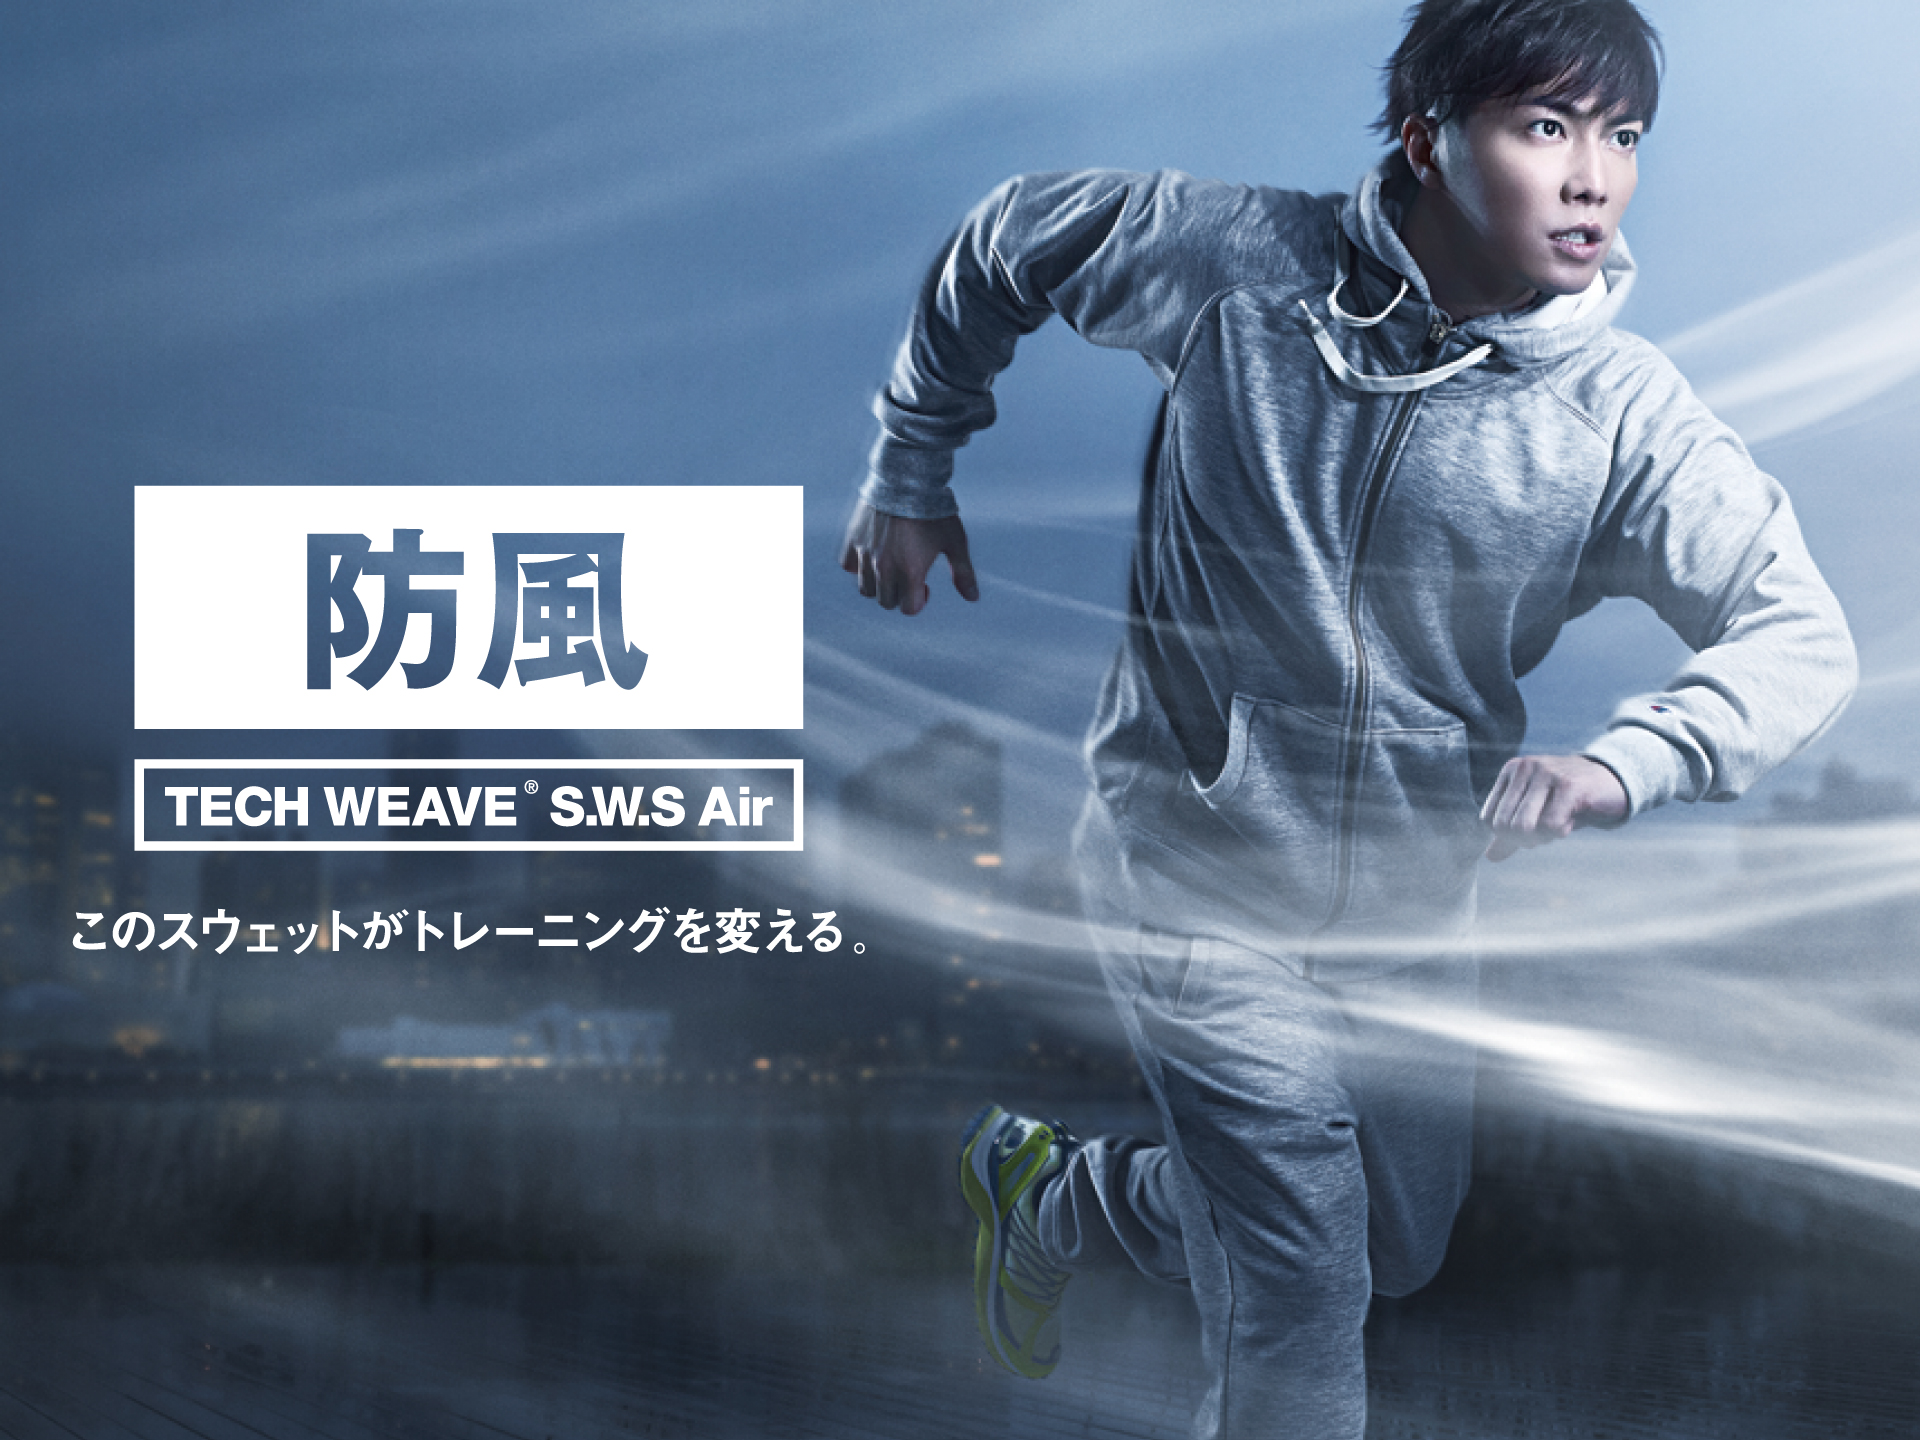 イメージキャラクターの俳優 成宮寛貴氏が機能スウェットシリーズを着用 株式会社ゴールドウインのプレスリリース